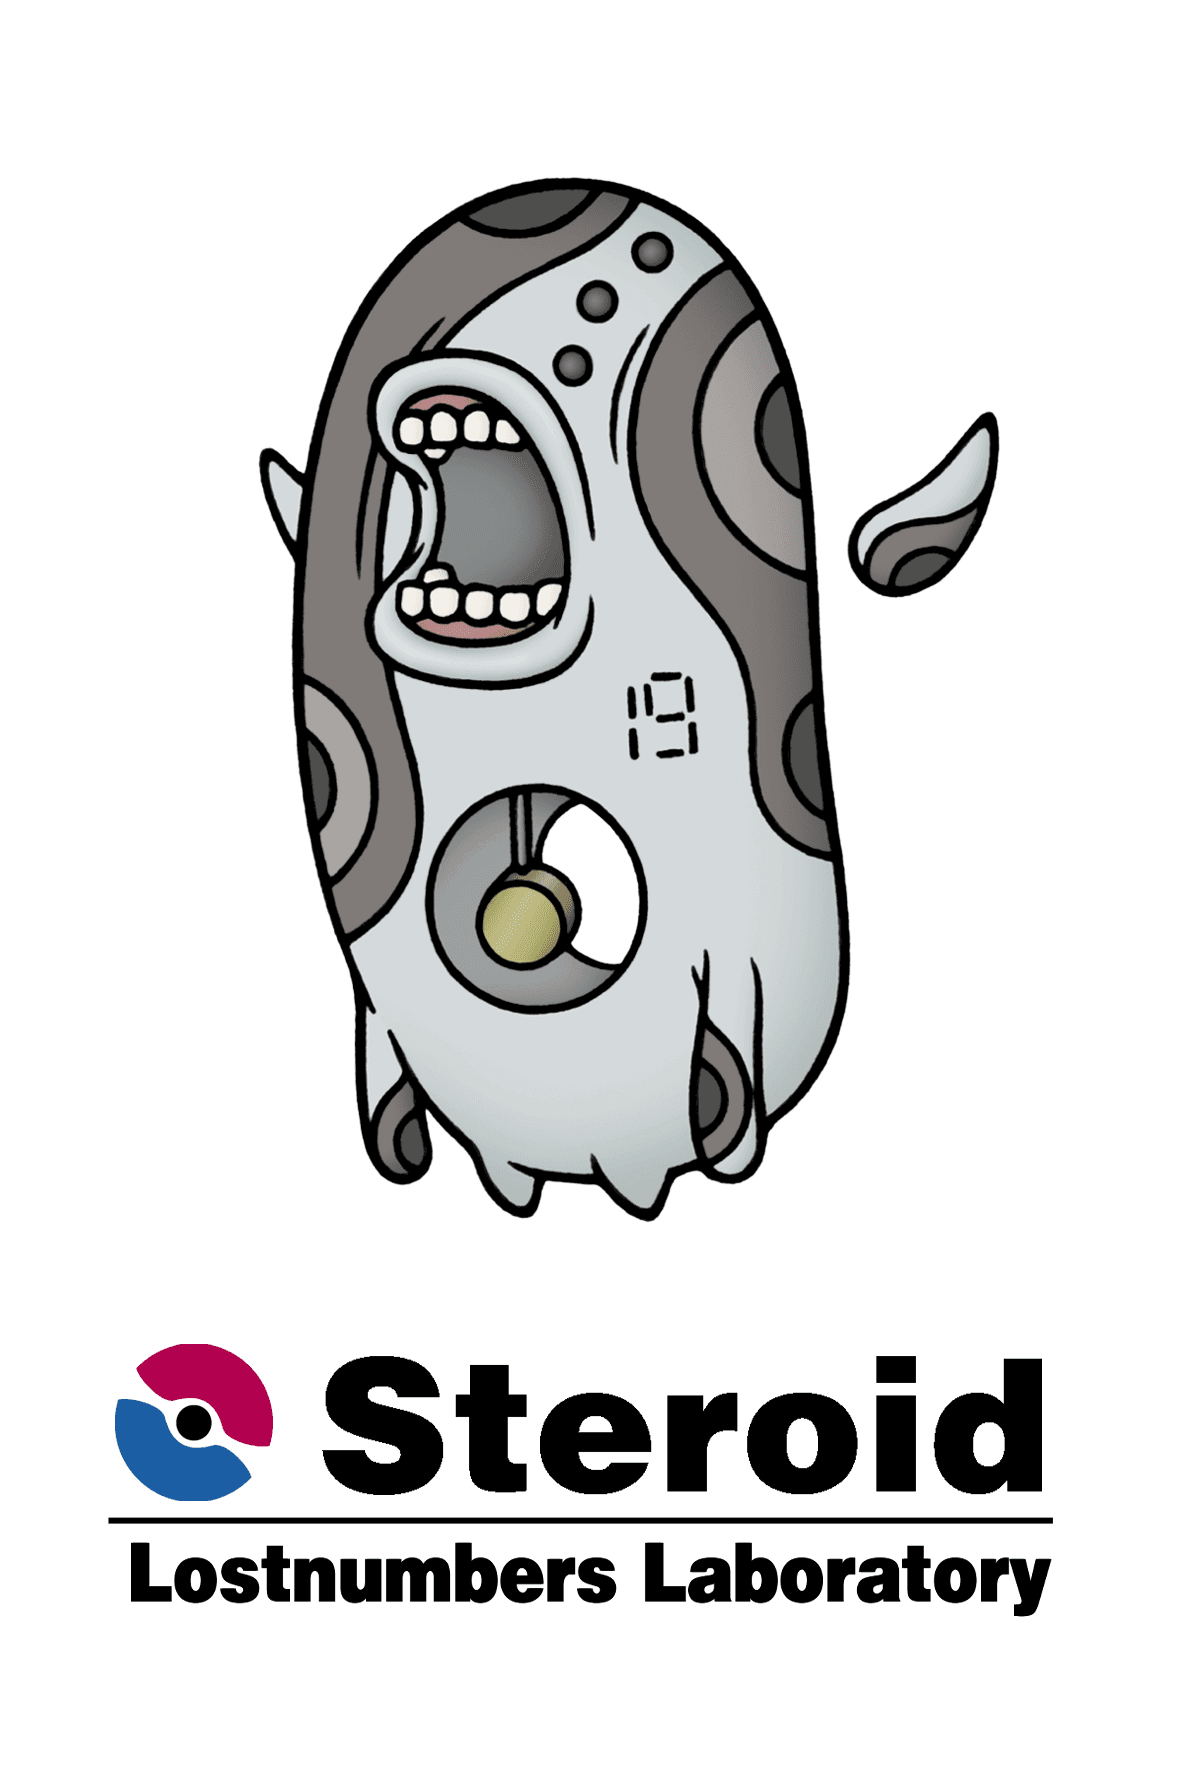 Team-Steroid 横幅